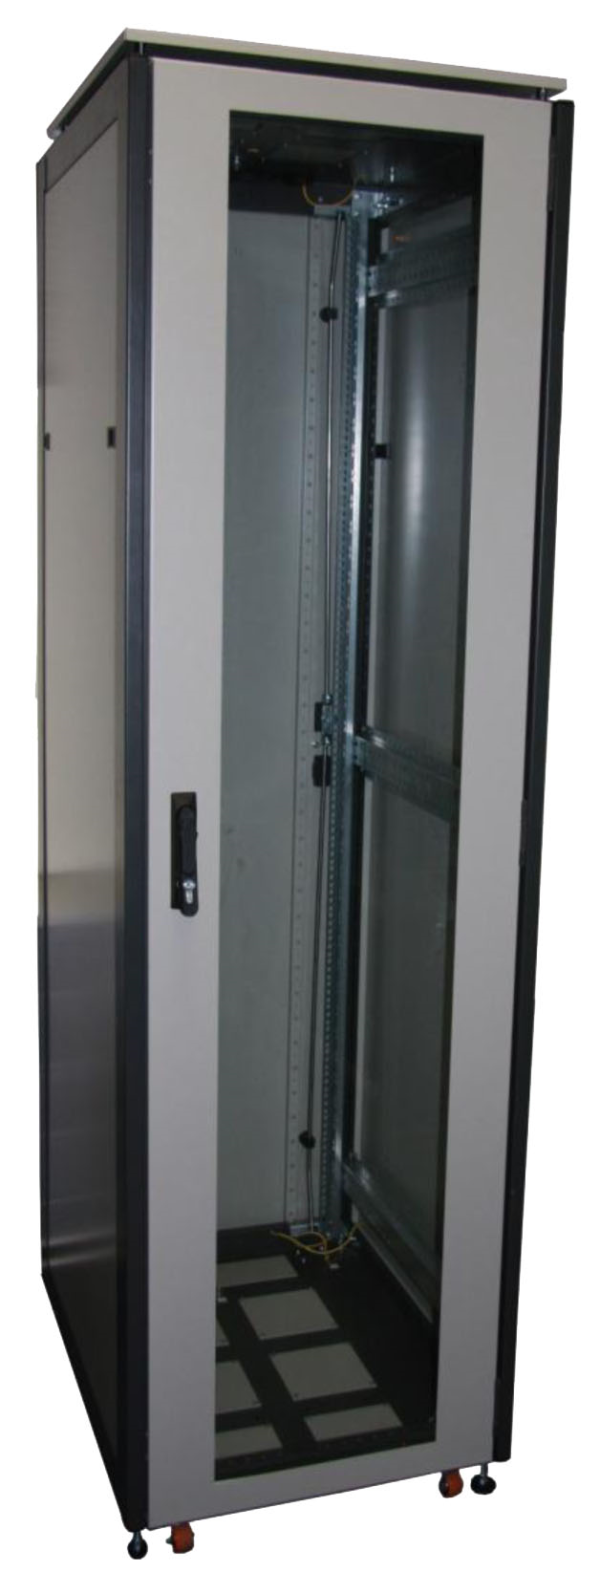 ССКТБ ТОМАСС ШТК-8820Э-01 - шкаф телекоммуникационный 19", 42U, 800х800х2000 мм, с металлической задней панелью и стеклянной дверью